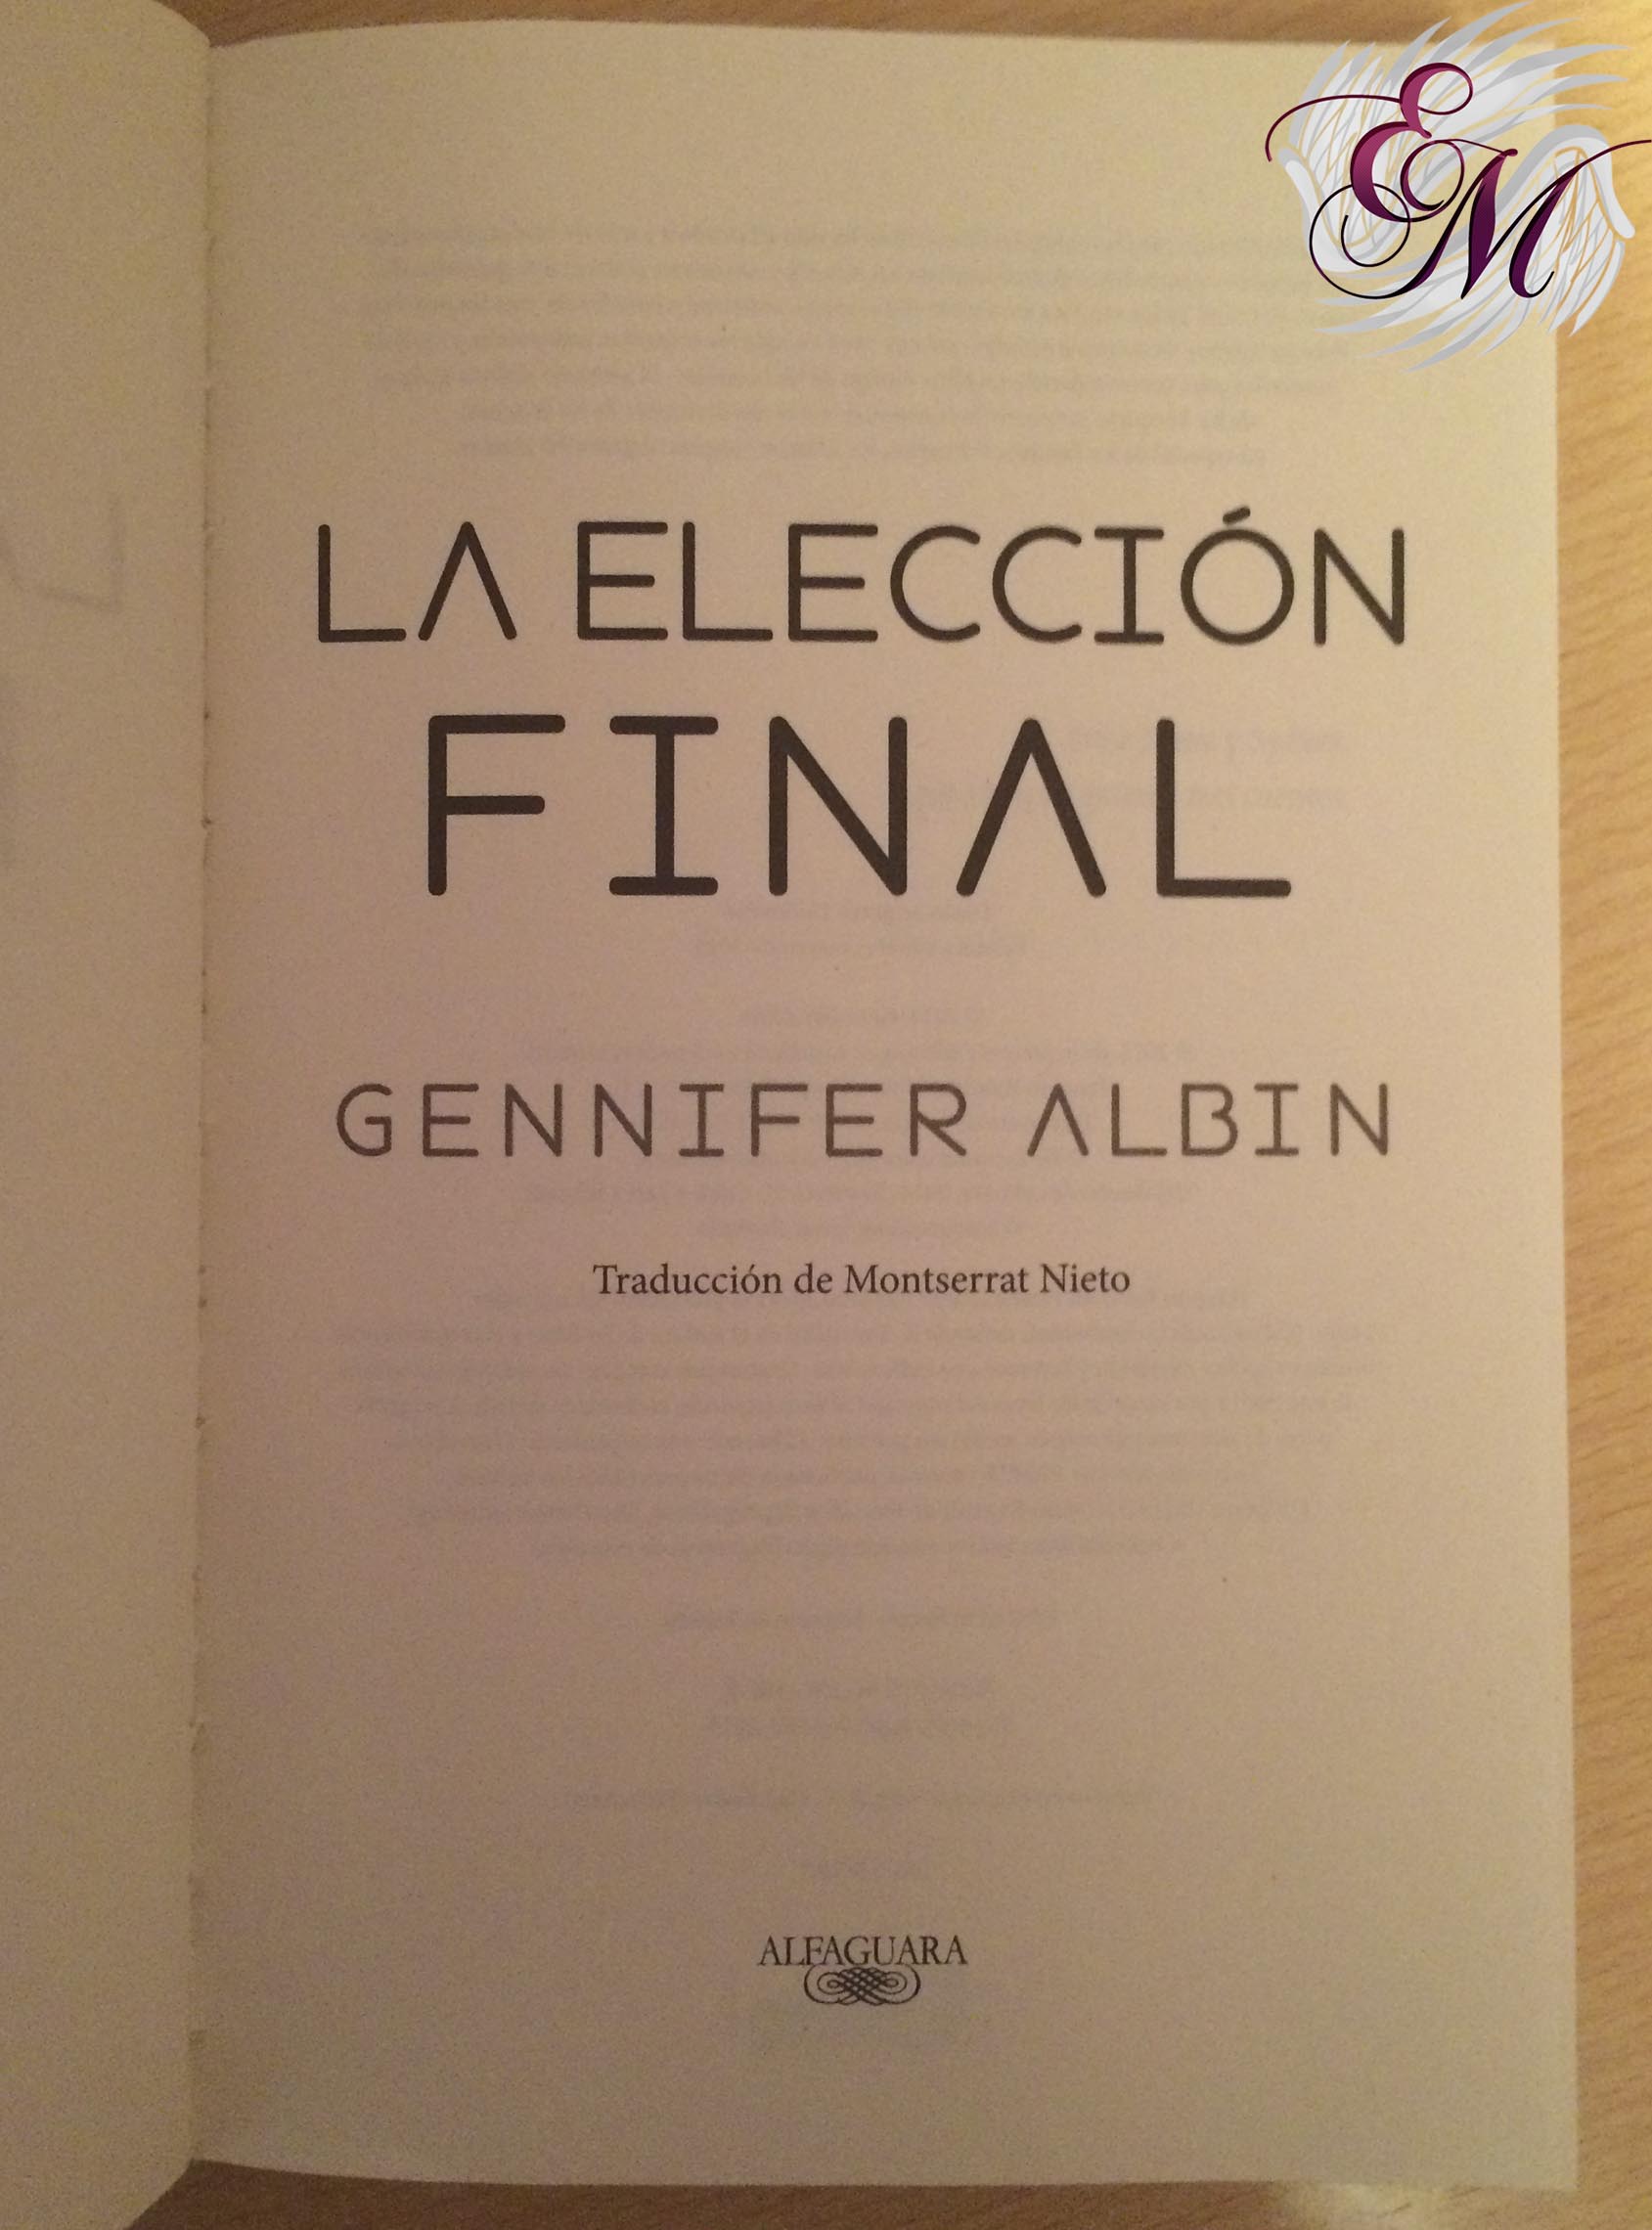 La elección final, de Gennifer Albin - Reseña